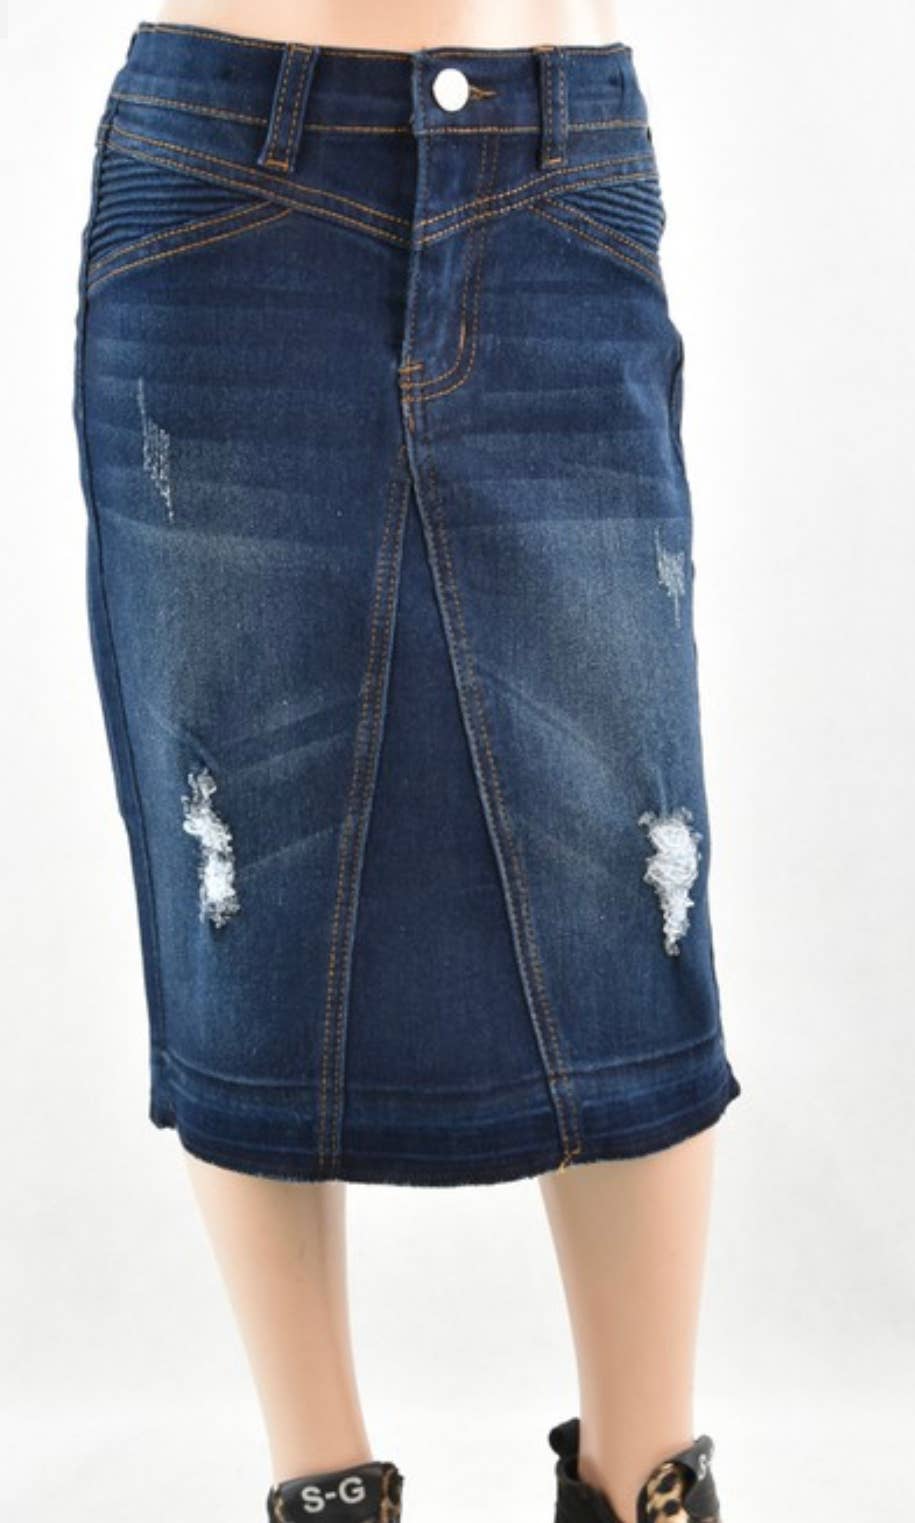 Customized Women Short Denim Skirts Elastic Waist Girls Beige Mini Skirt -  China Short Skirt and Clothing price | Made-in-China.com